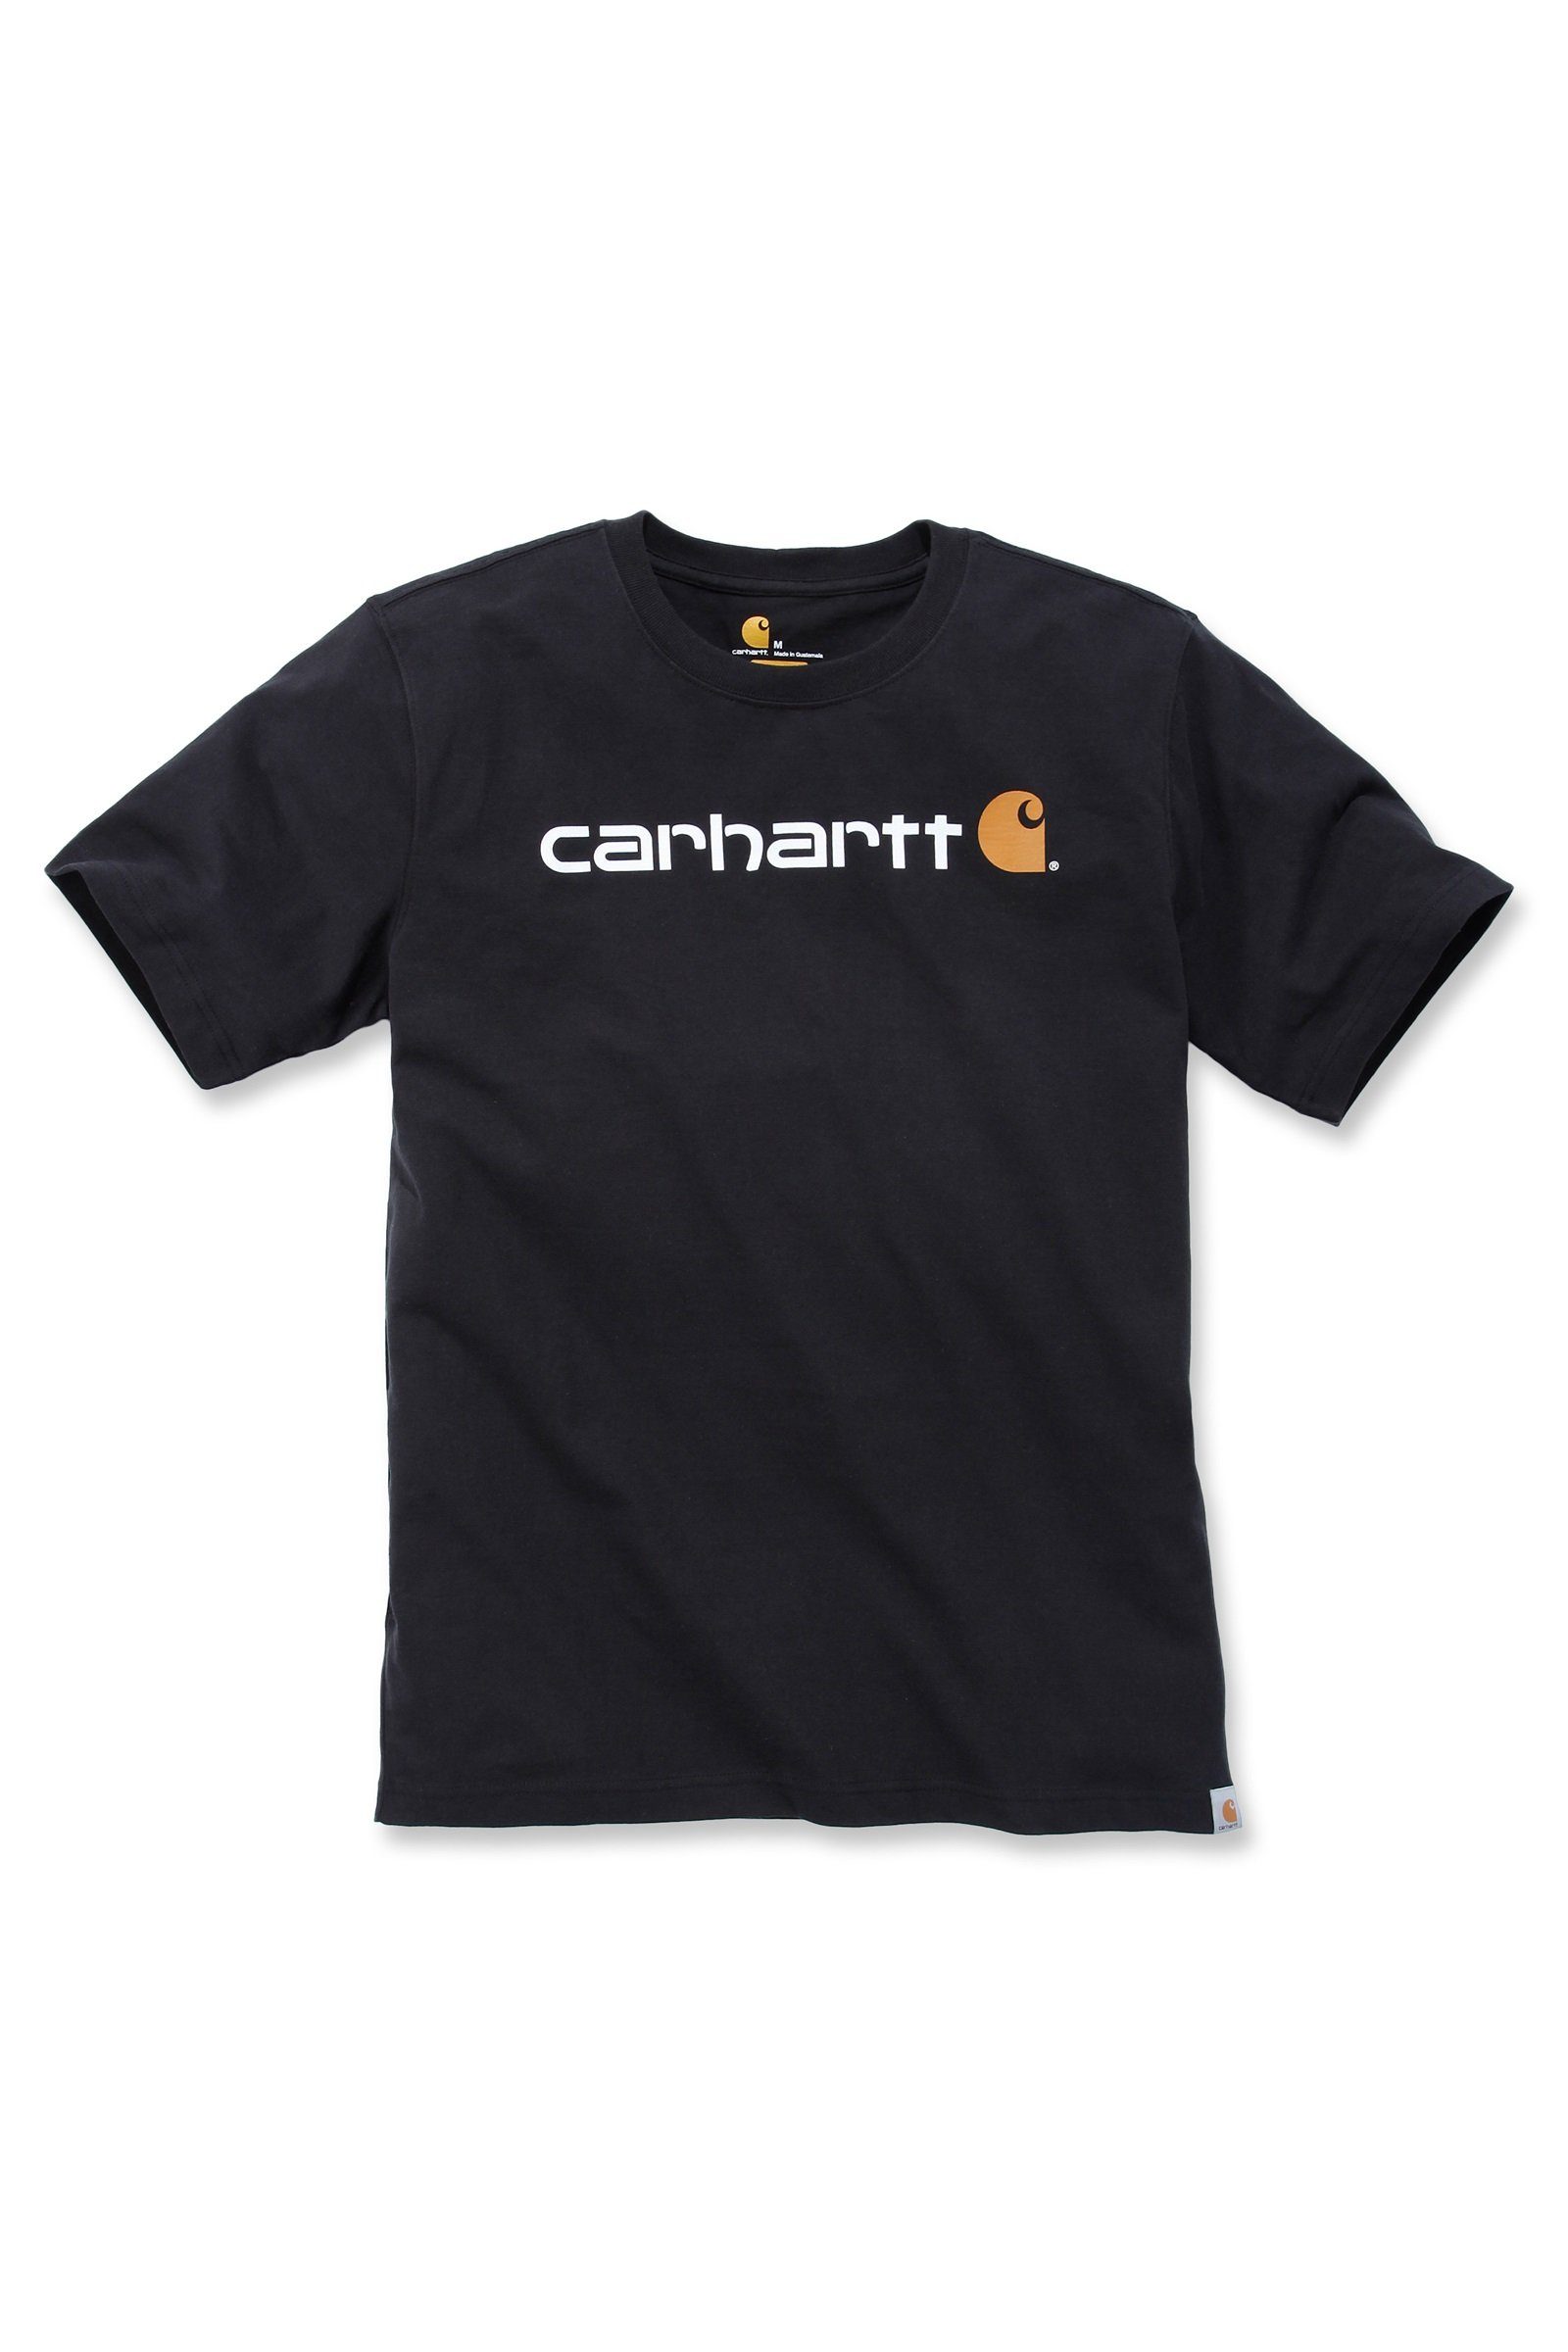 T-Shirt T-Shirt Short-Sleeve Relaxed Adult Heavyweight black Graphic Herren Fit Carhartt Carhartt Logo